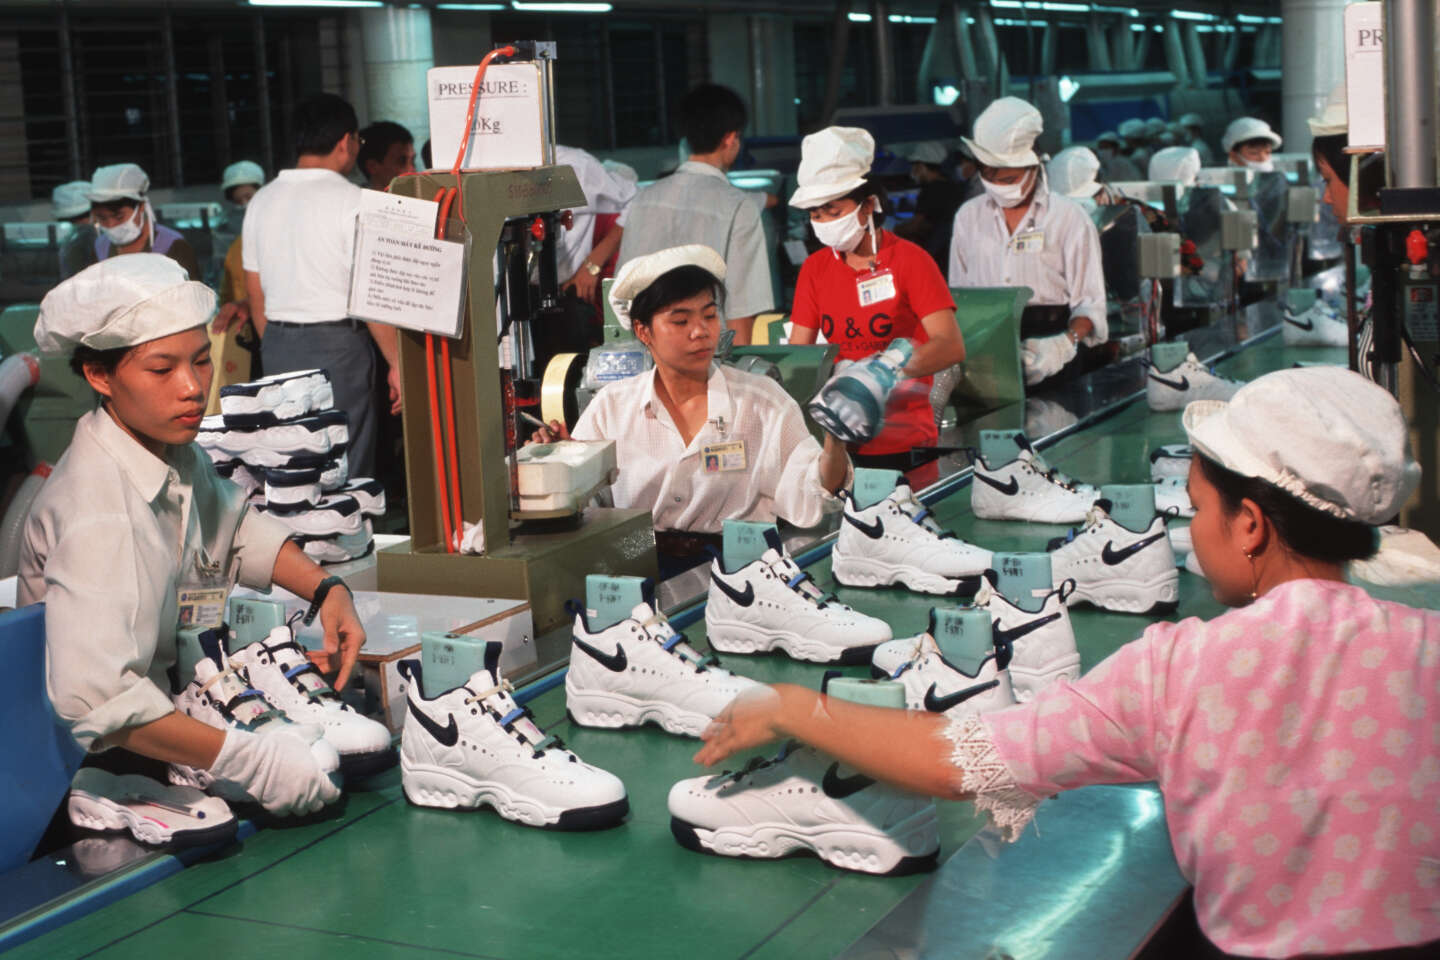 Idées de tenues de maternité Nike. Nike CH